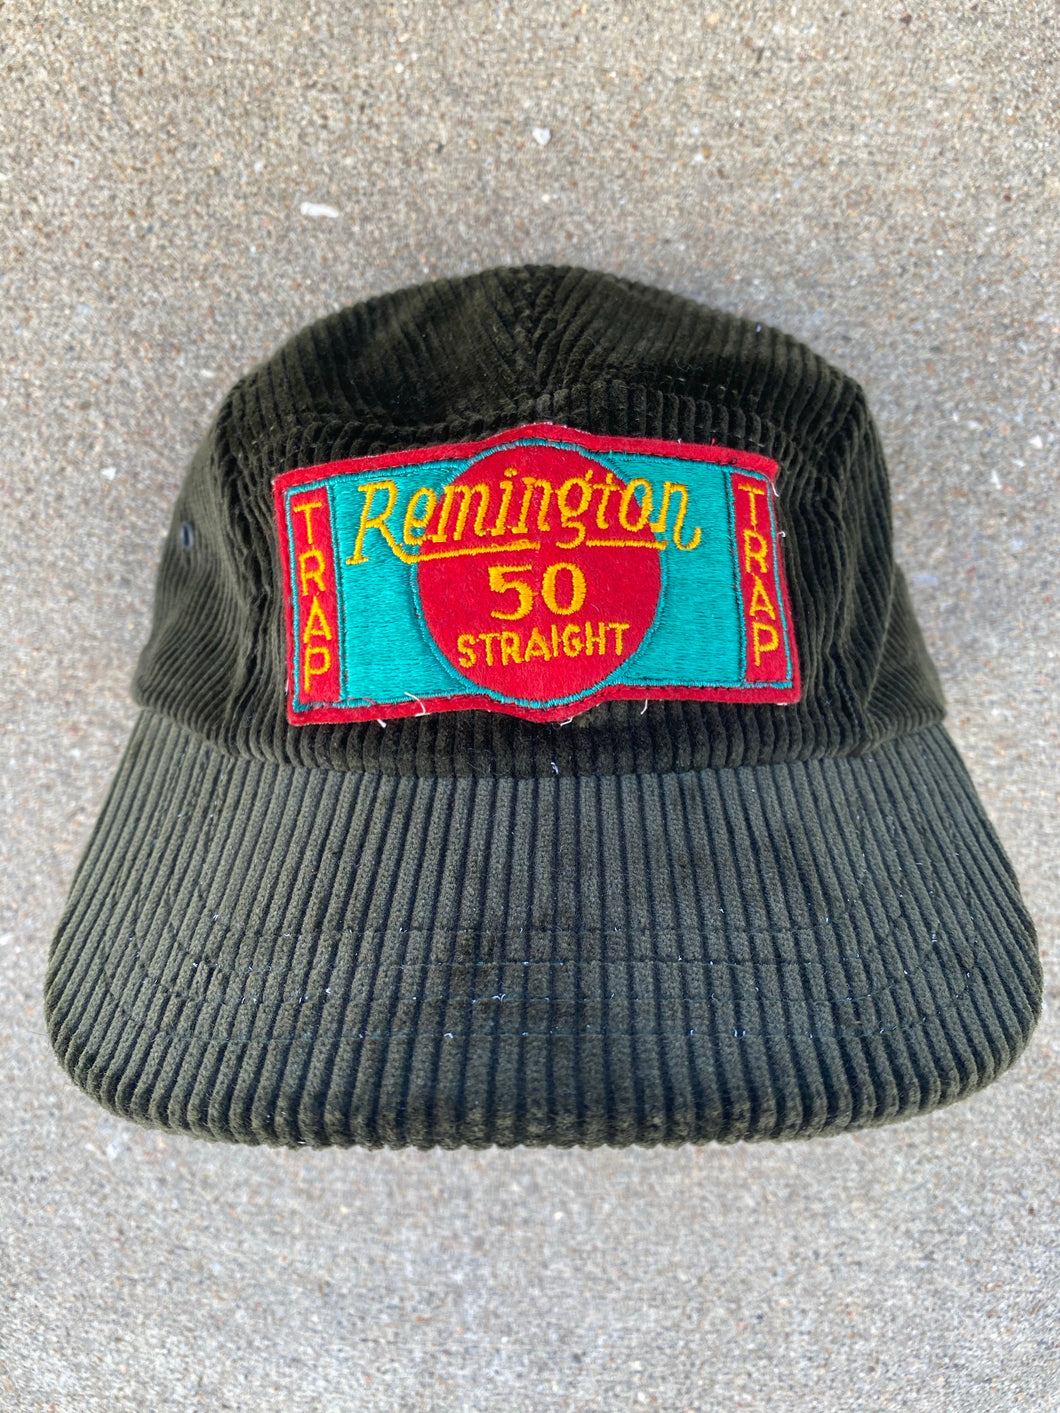 Duxbak Corduroy Remington 50 Trap Patch Hat